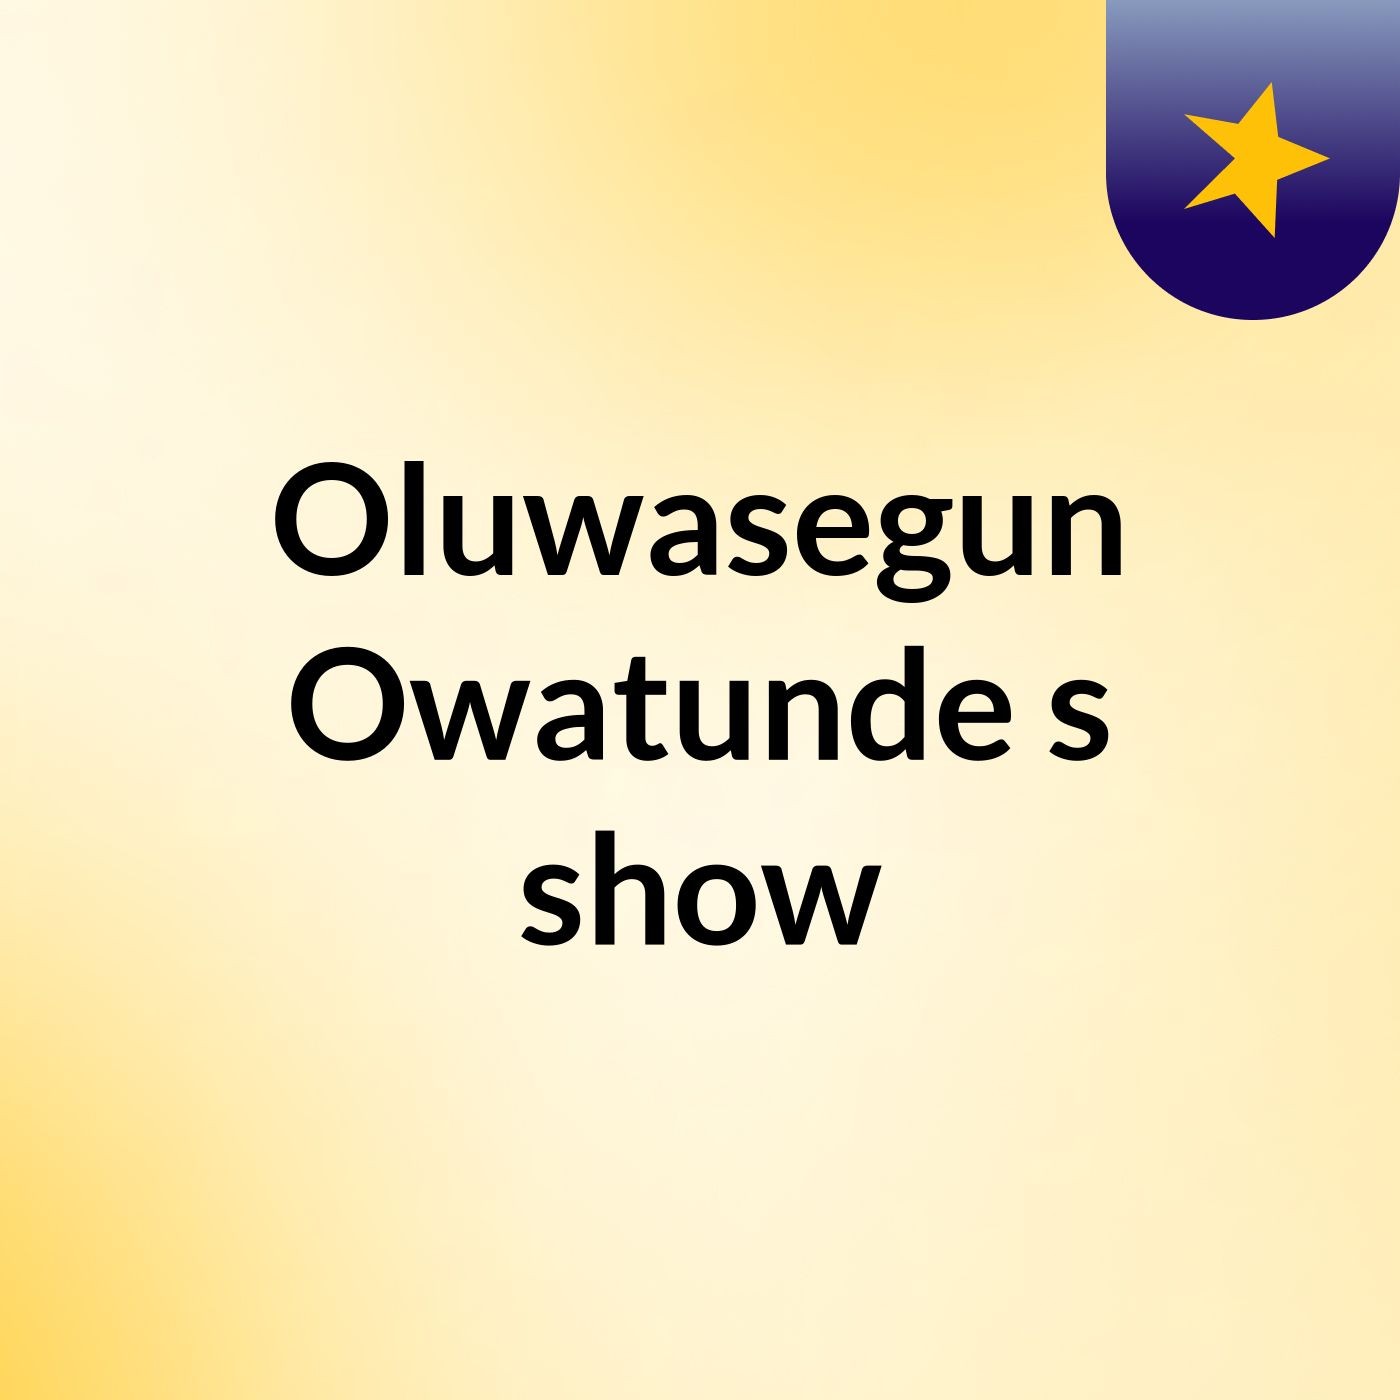 Episode 11 - Oluwasegun Owatunde's show